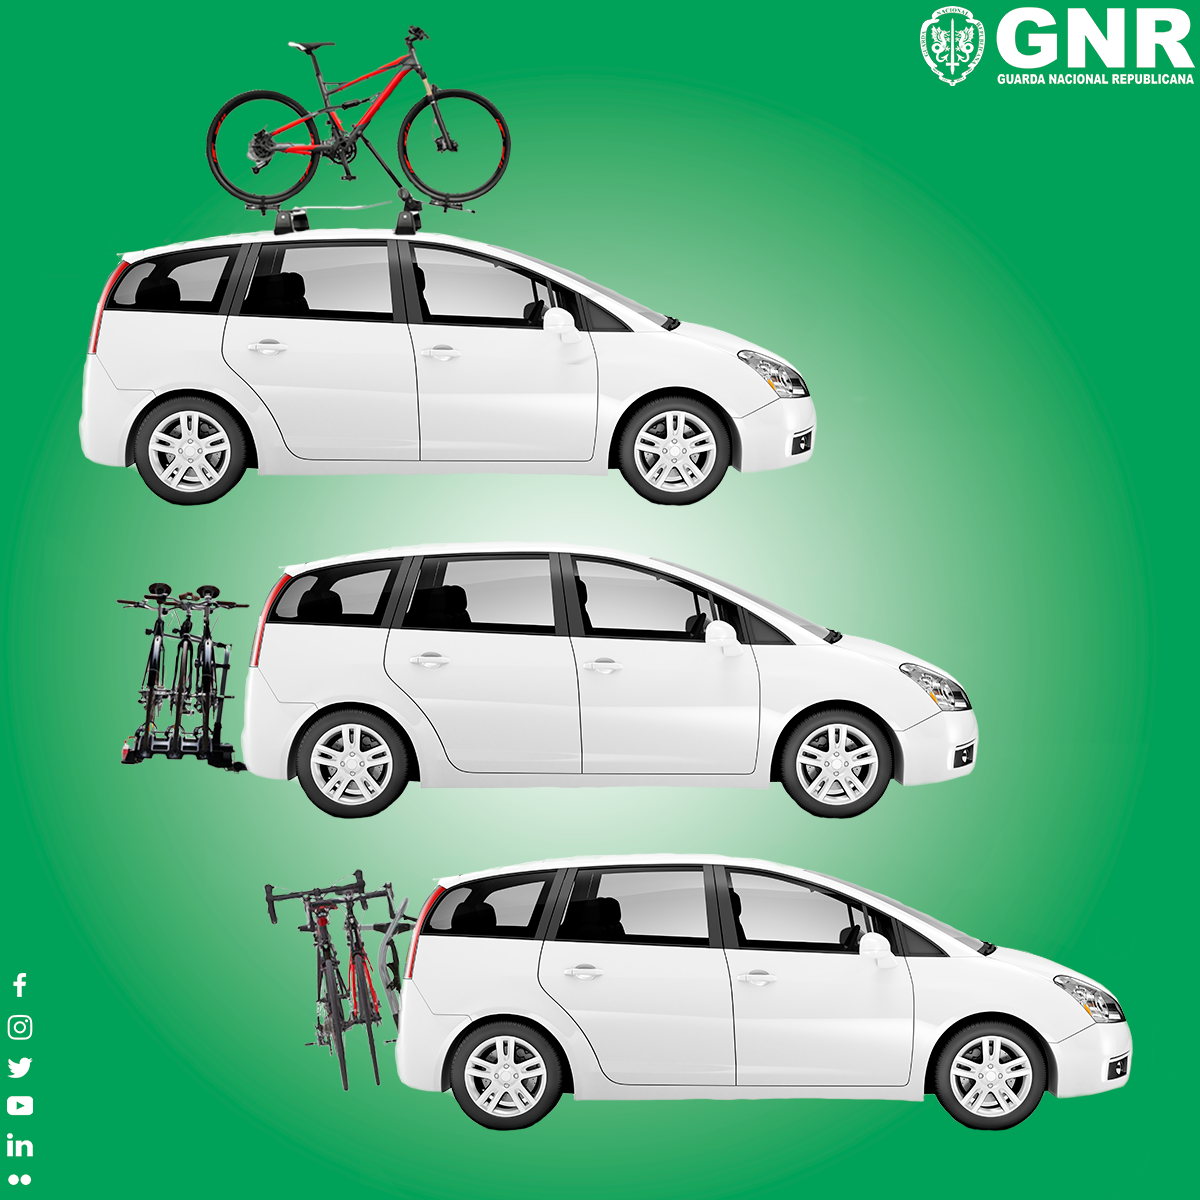 Sabe como transportar a sua bicicleta em automóveis ligeiros de caixa fechada? A GNR esclarece